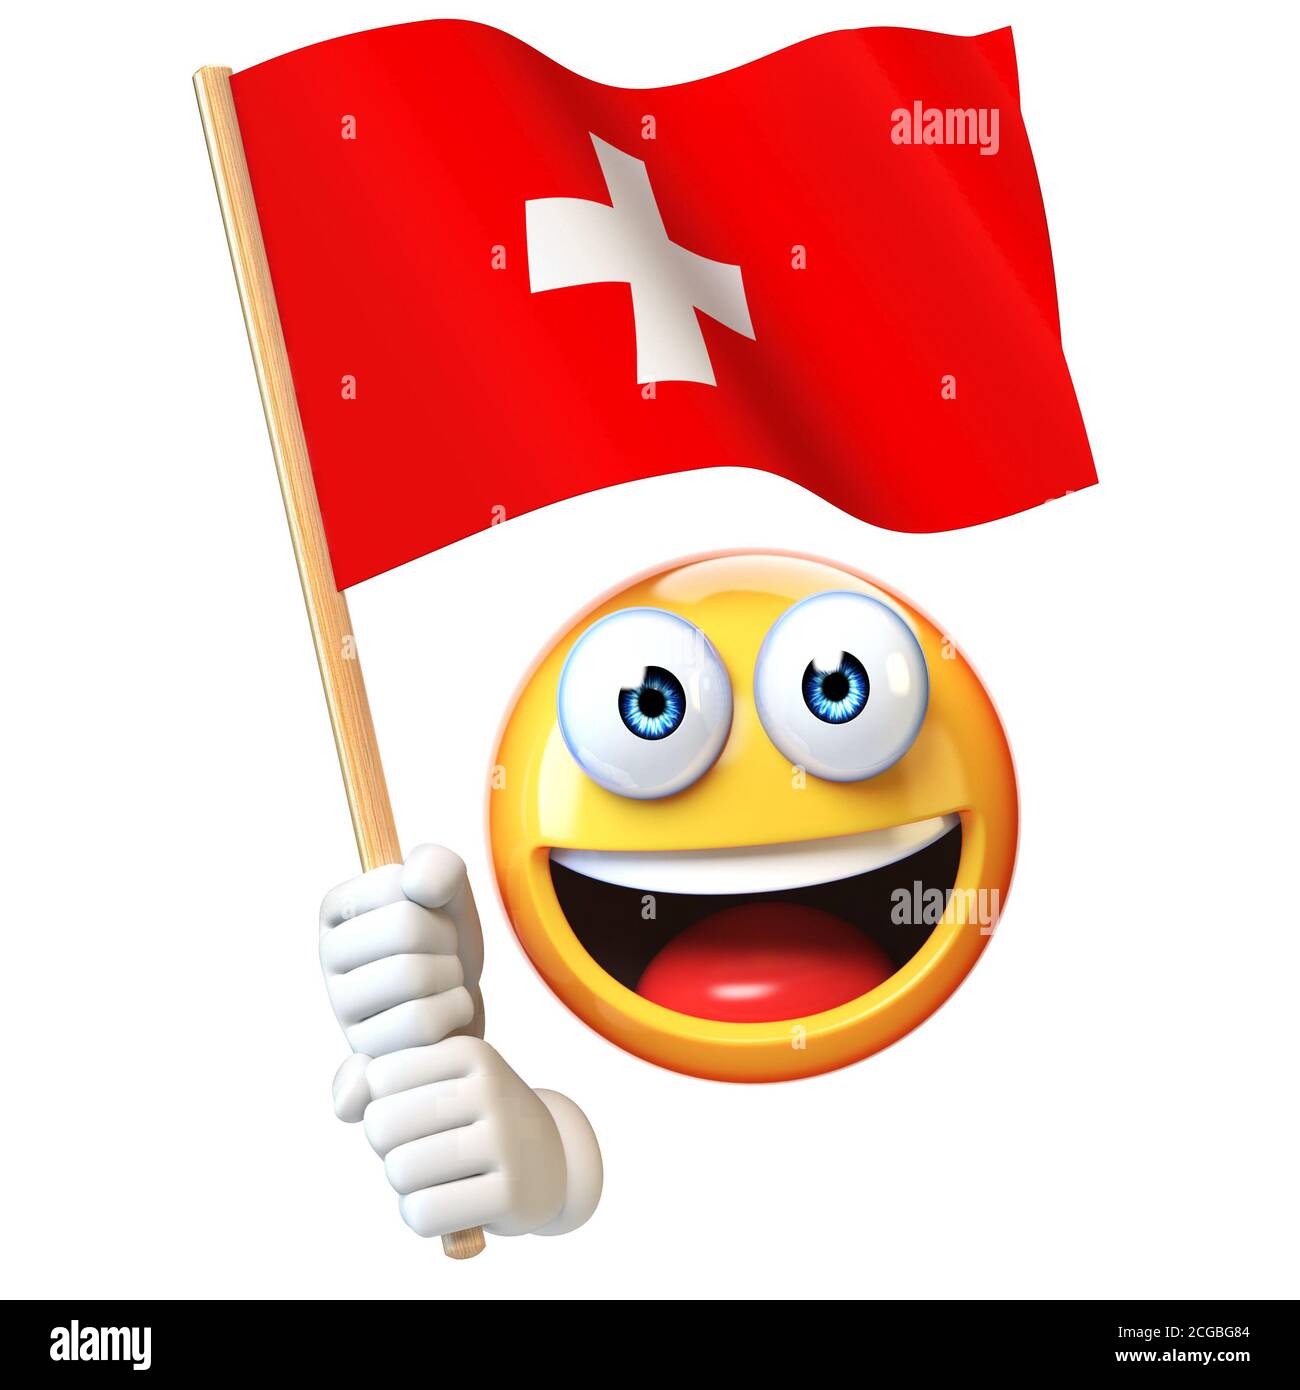 Swiss National Team Stockfotos und -bilder Kaufen - Seite 3 - Alamy